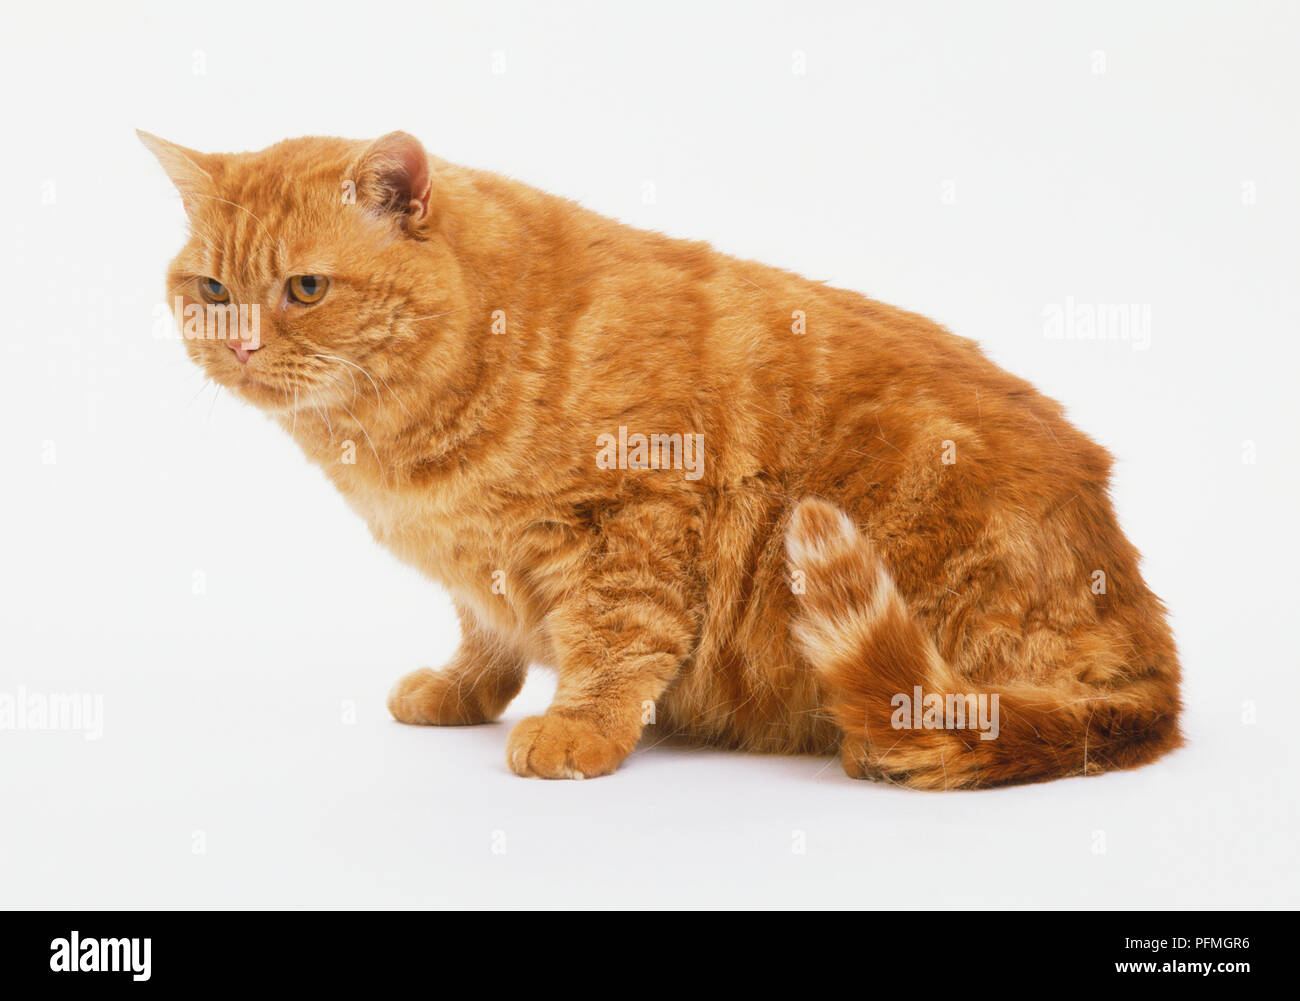 Le gingembre cat (Felis catus), assis, side view Banque D'Images